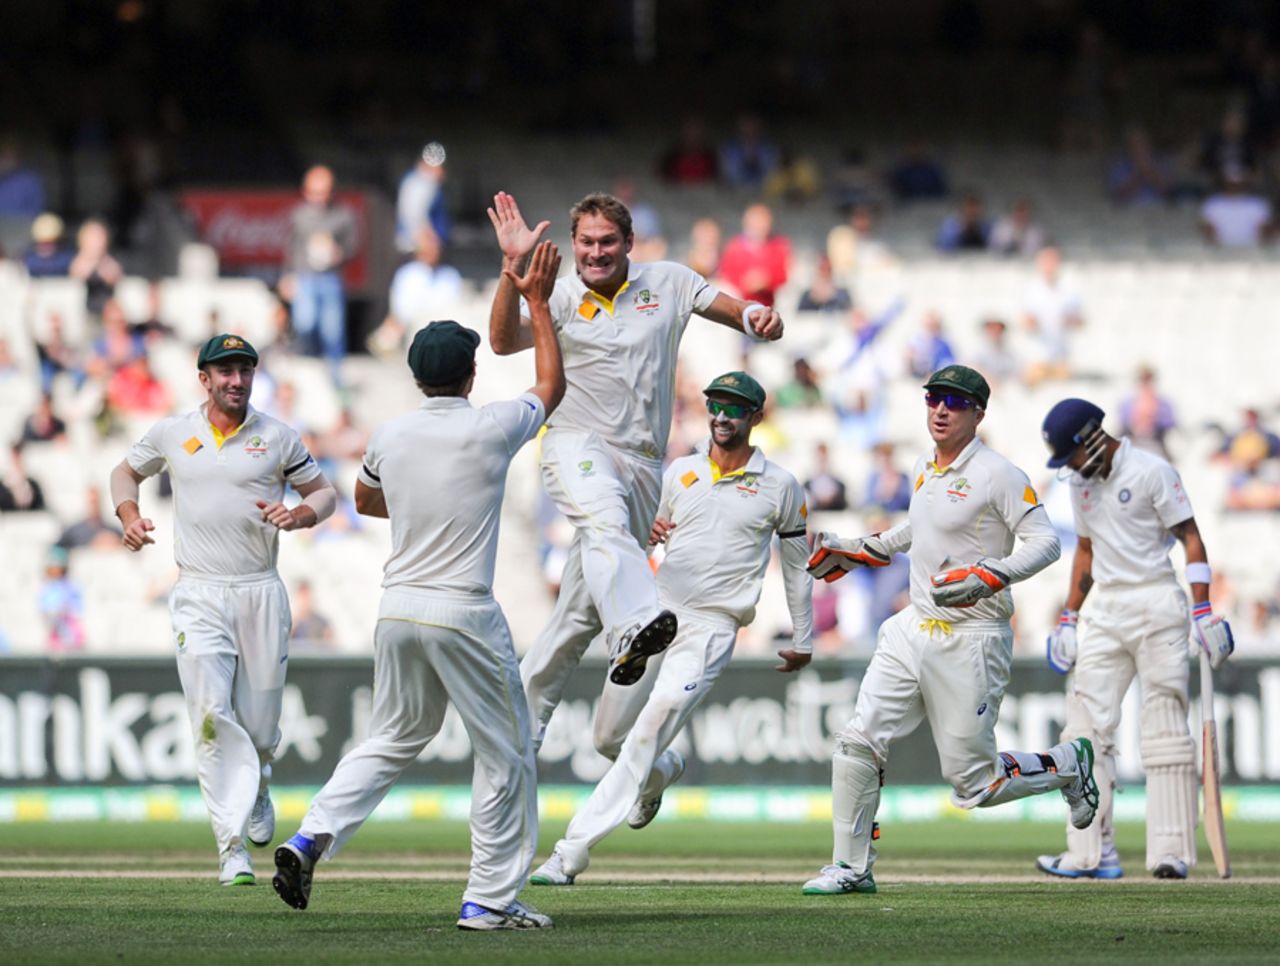 Australia come together after Virat Kohli is dismissed, Australia v India, 3rd Test, Melbourne, 5th day, December 30, 2014